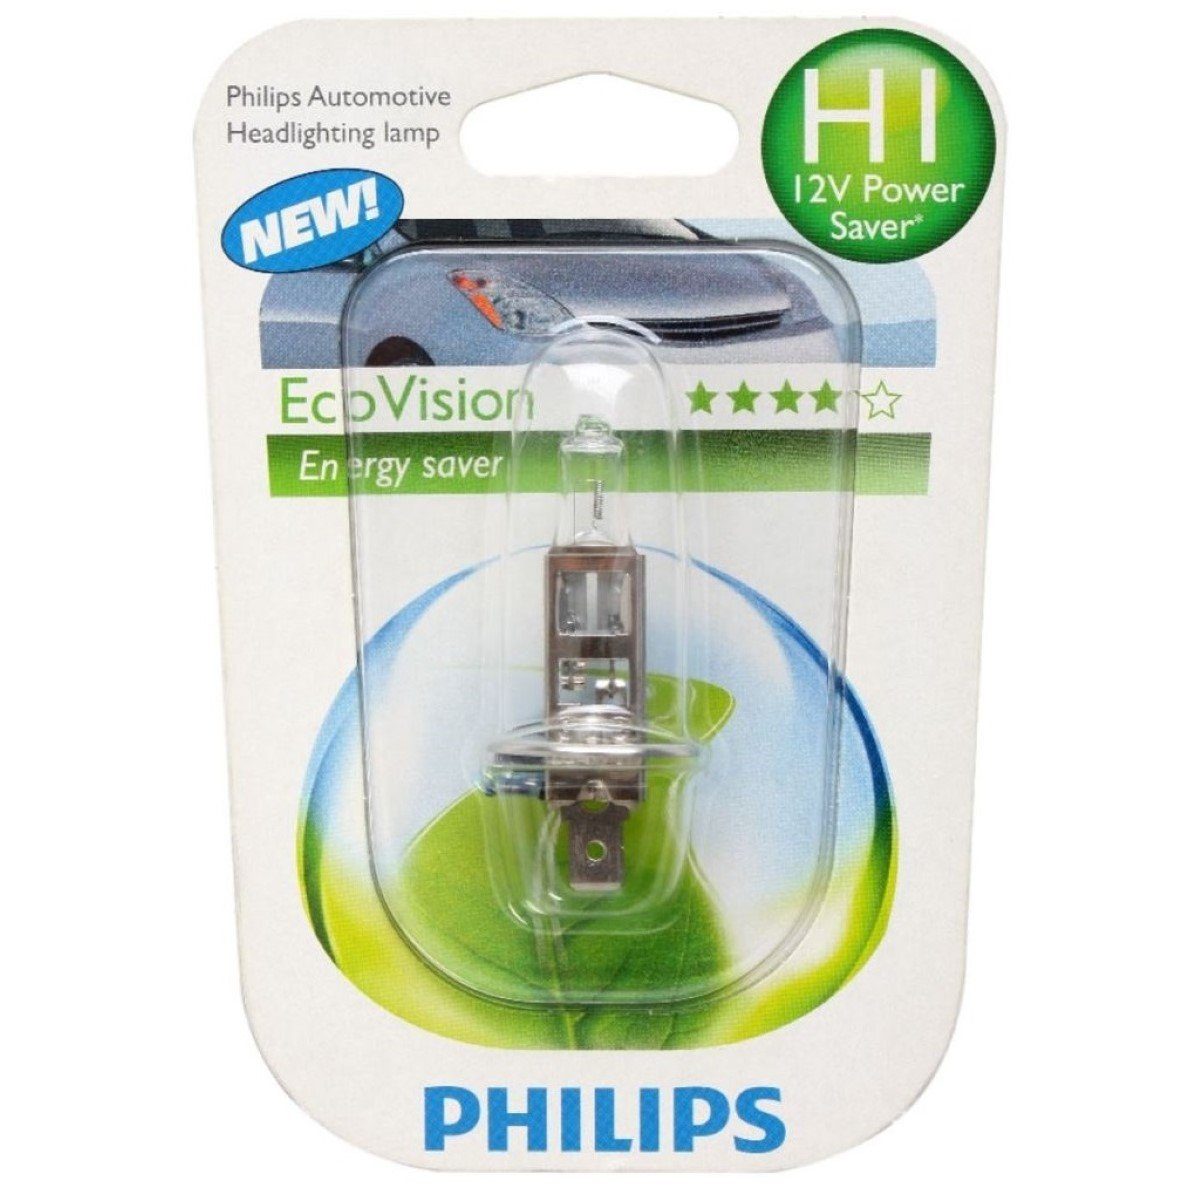 Philips KFZ-Ersatzleuchte H1 Eco-Vision 12V Sockel 1 Auto-Birne Scheinwerfer-Lampe P14,5s Energysaver mit Halogen-Birnen H1 12V Auto-Lampe, St., 55W H1, Weiß